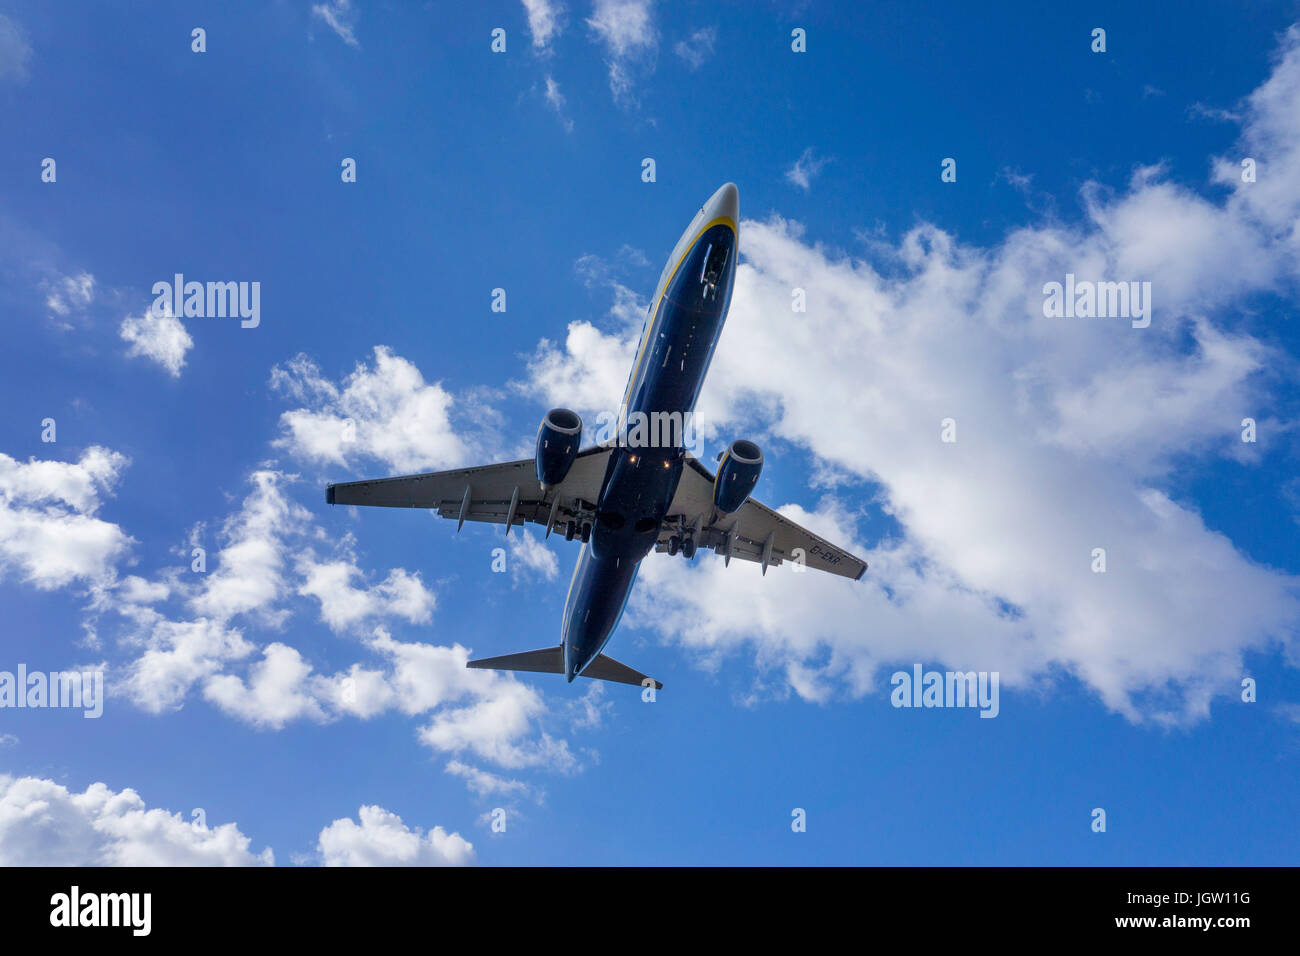 Ryanair beim landeanflug auf den flughafen lanzarote, ryanair in atterraggio a aeroporto, Lanzarote, Isole canarie, Spagna Foto Stock